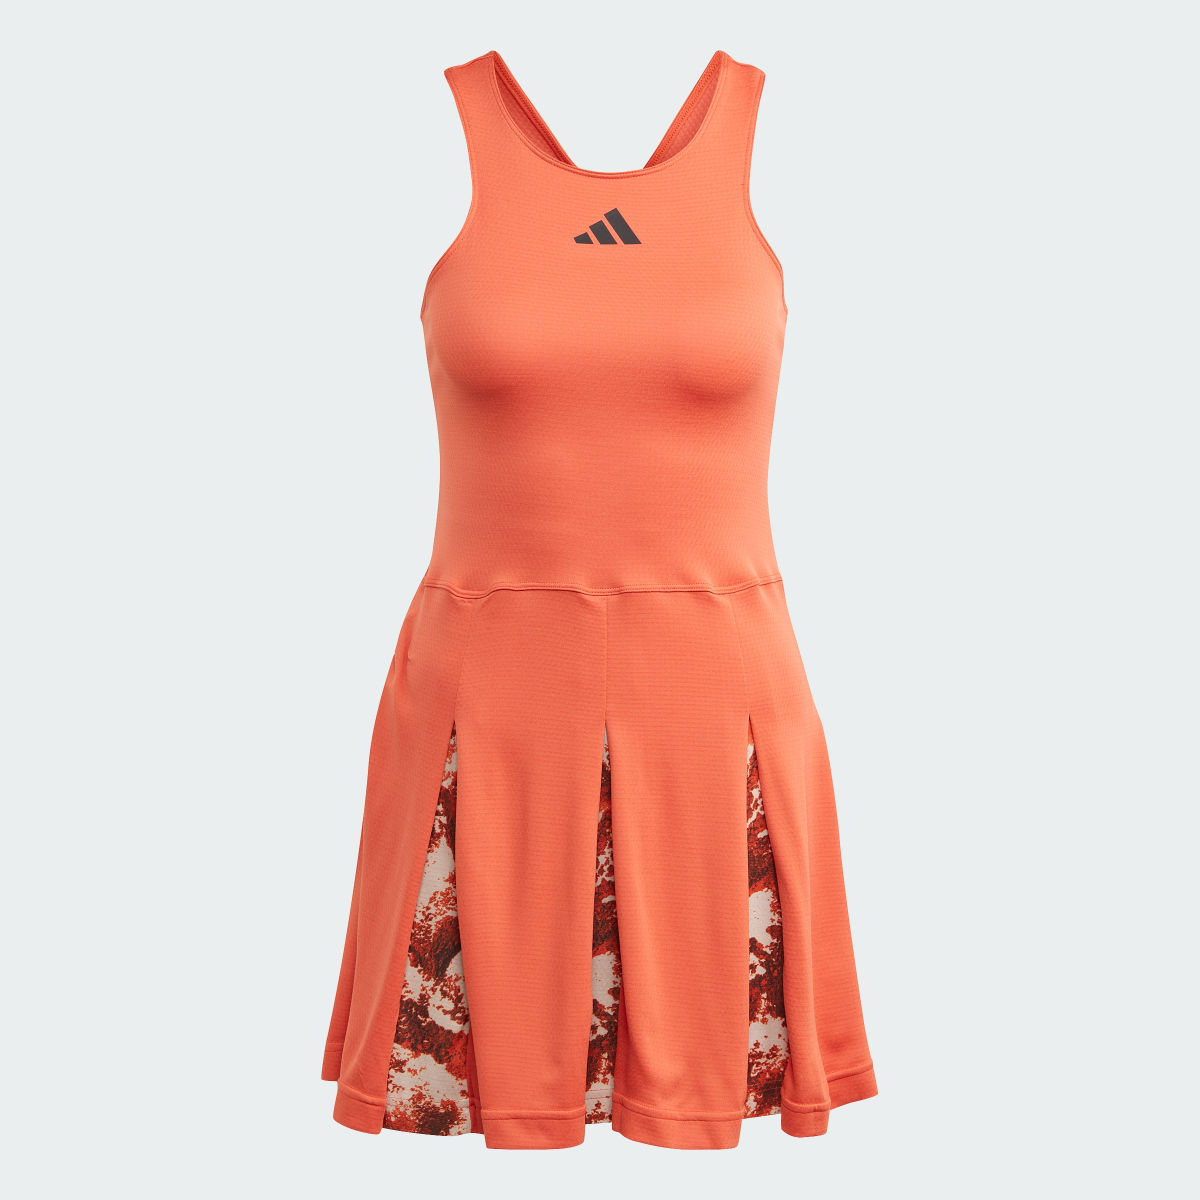 Adidas Tennis Paris Made to Be Remade Dress. 6